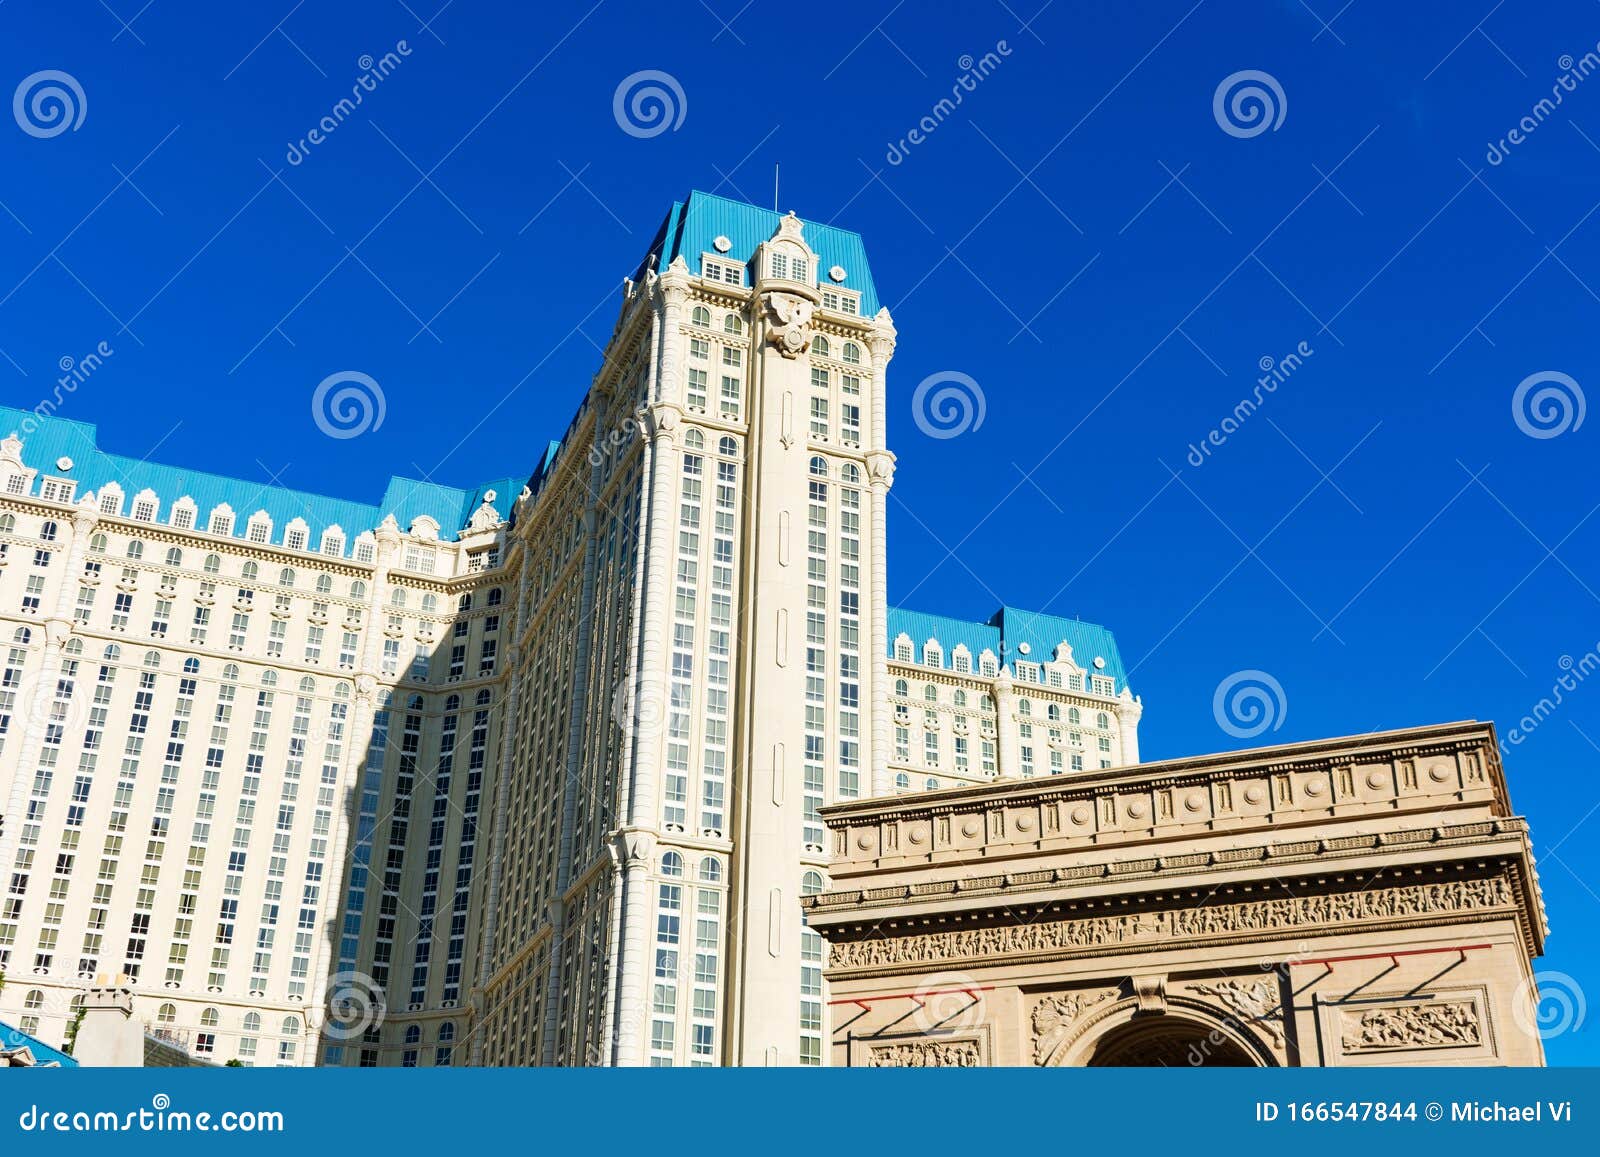 Paris Las Vegas Hotel and Casino - Luxury Hotel in Las Vegas